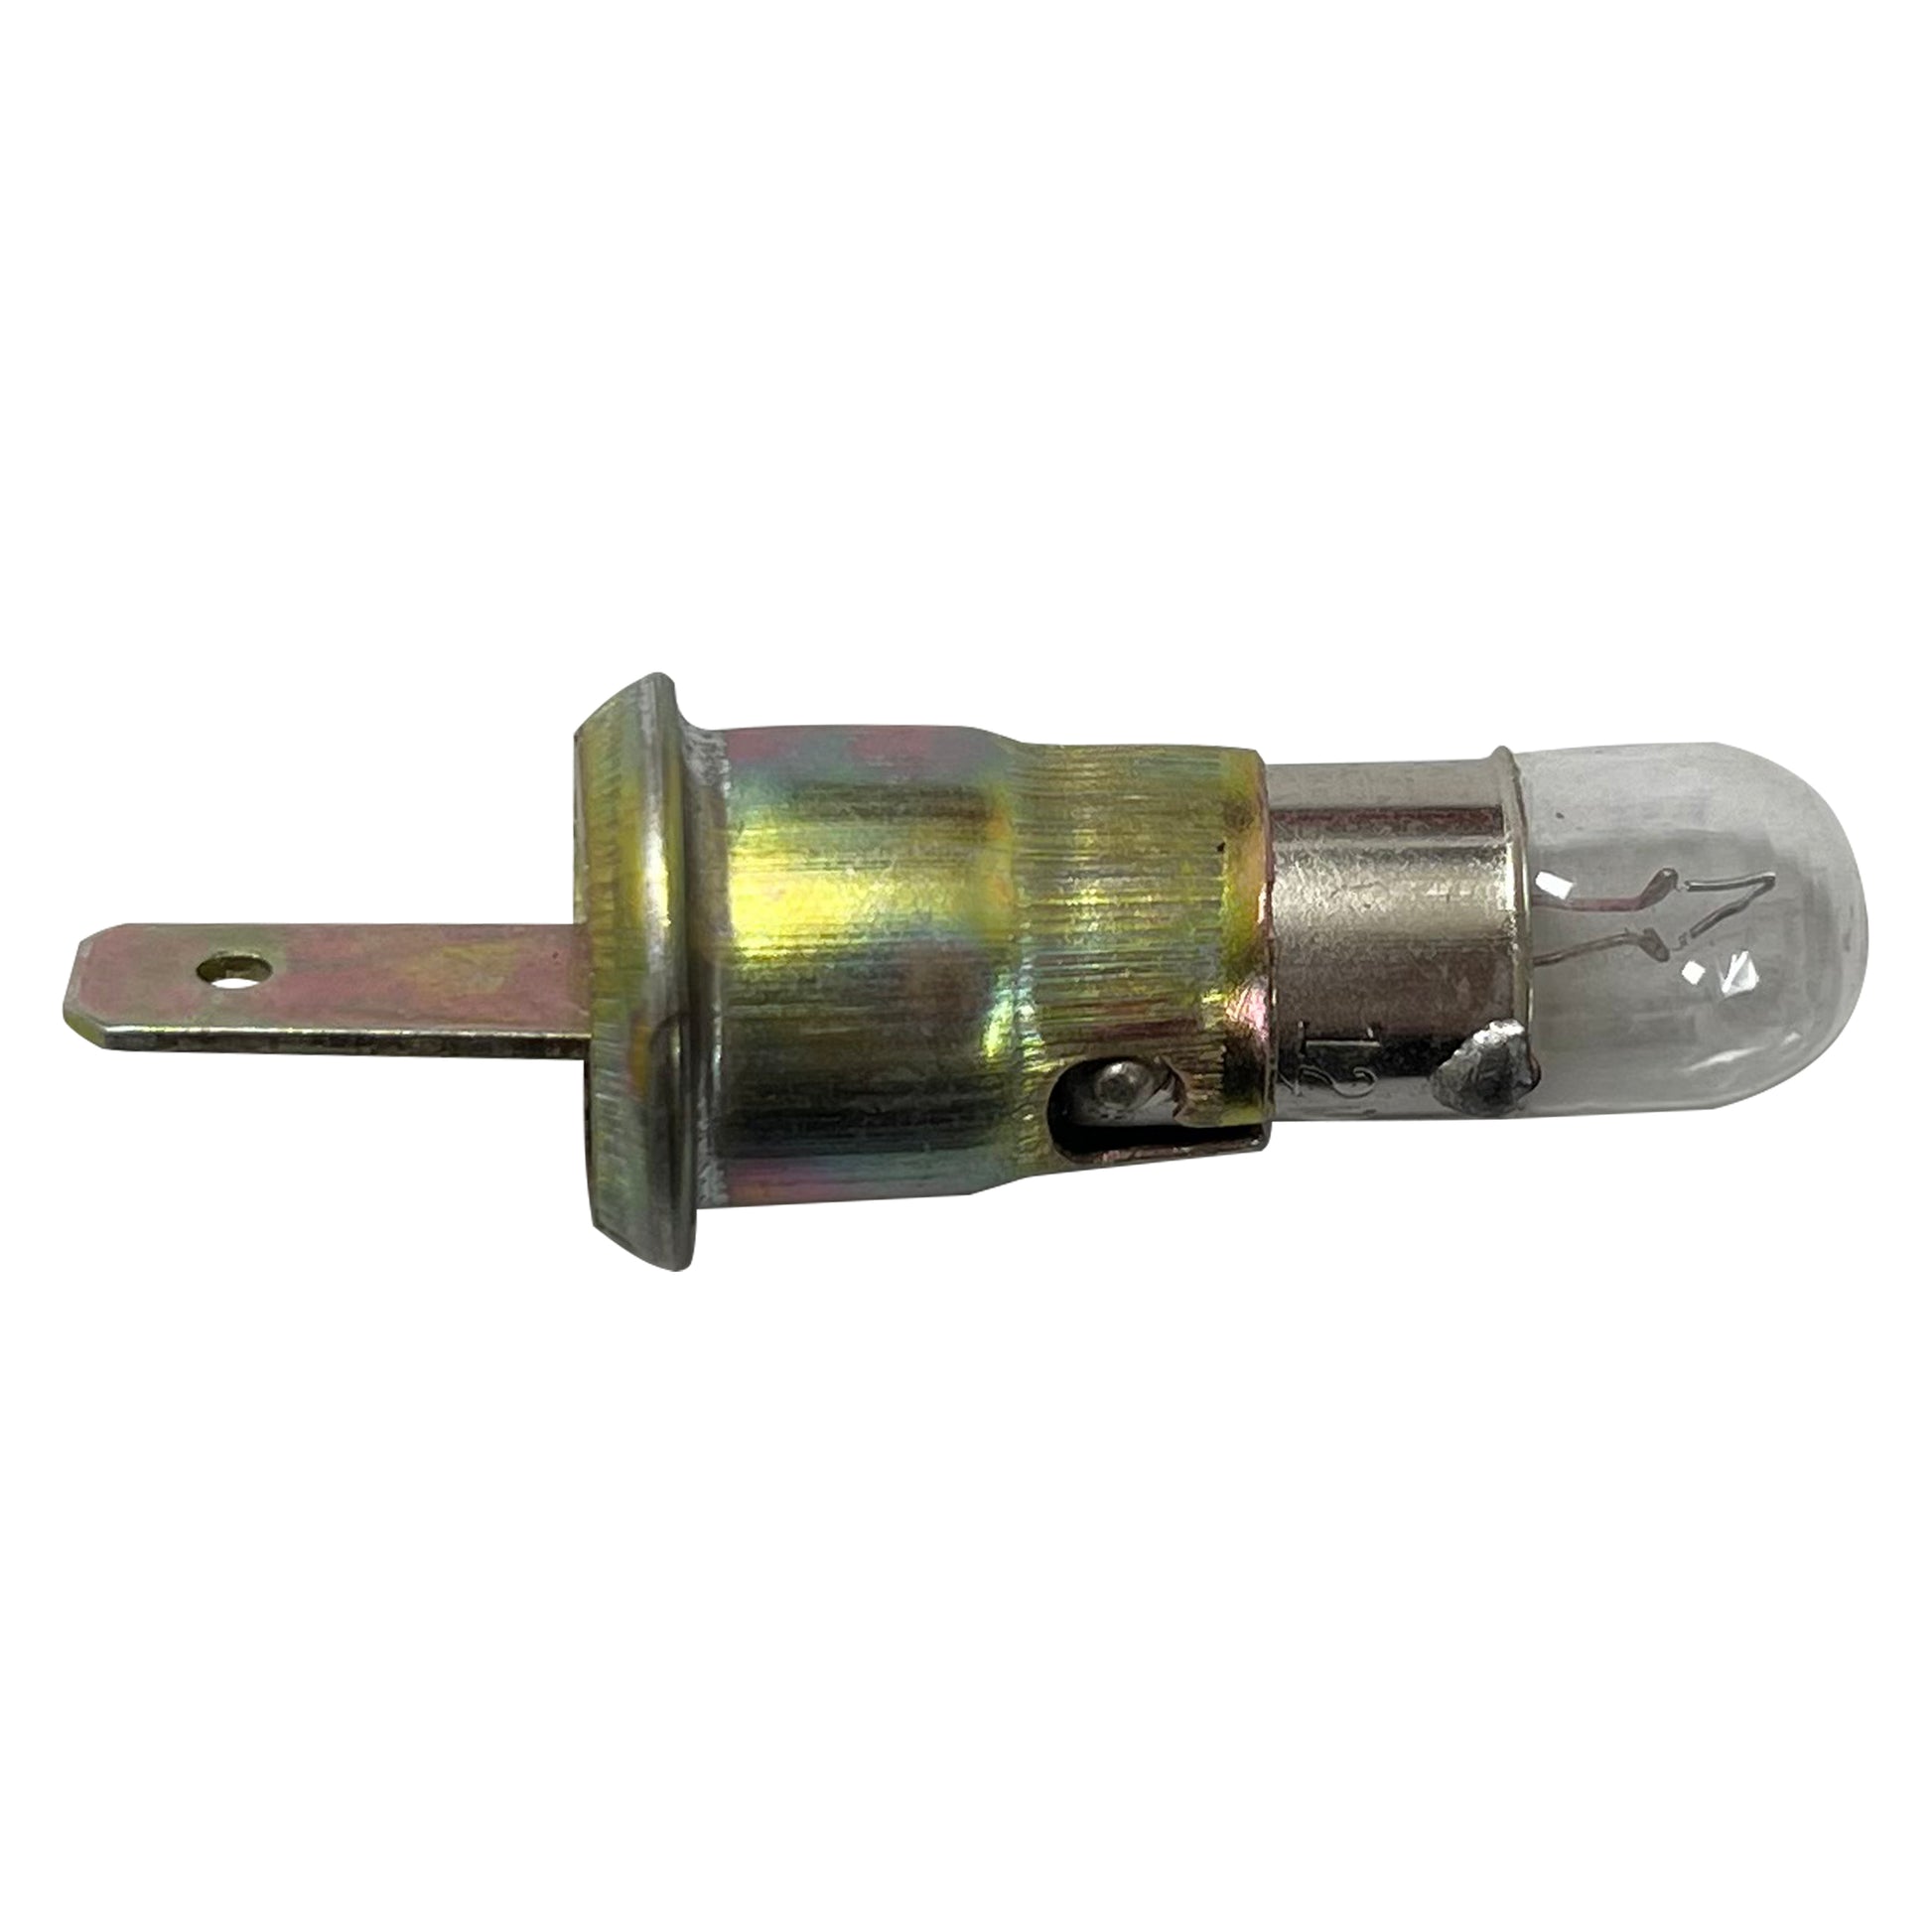 Universal Voltage Gauge Bulb & Mount - 12 to 15 V - 2" Inch Diameter - 12V